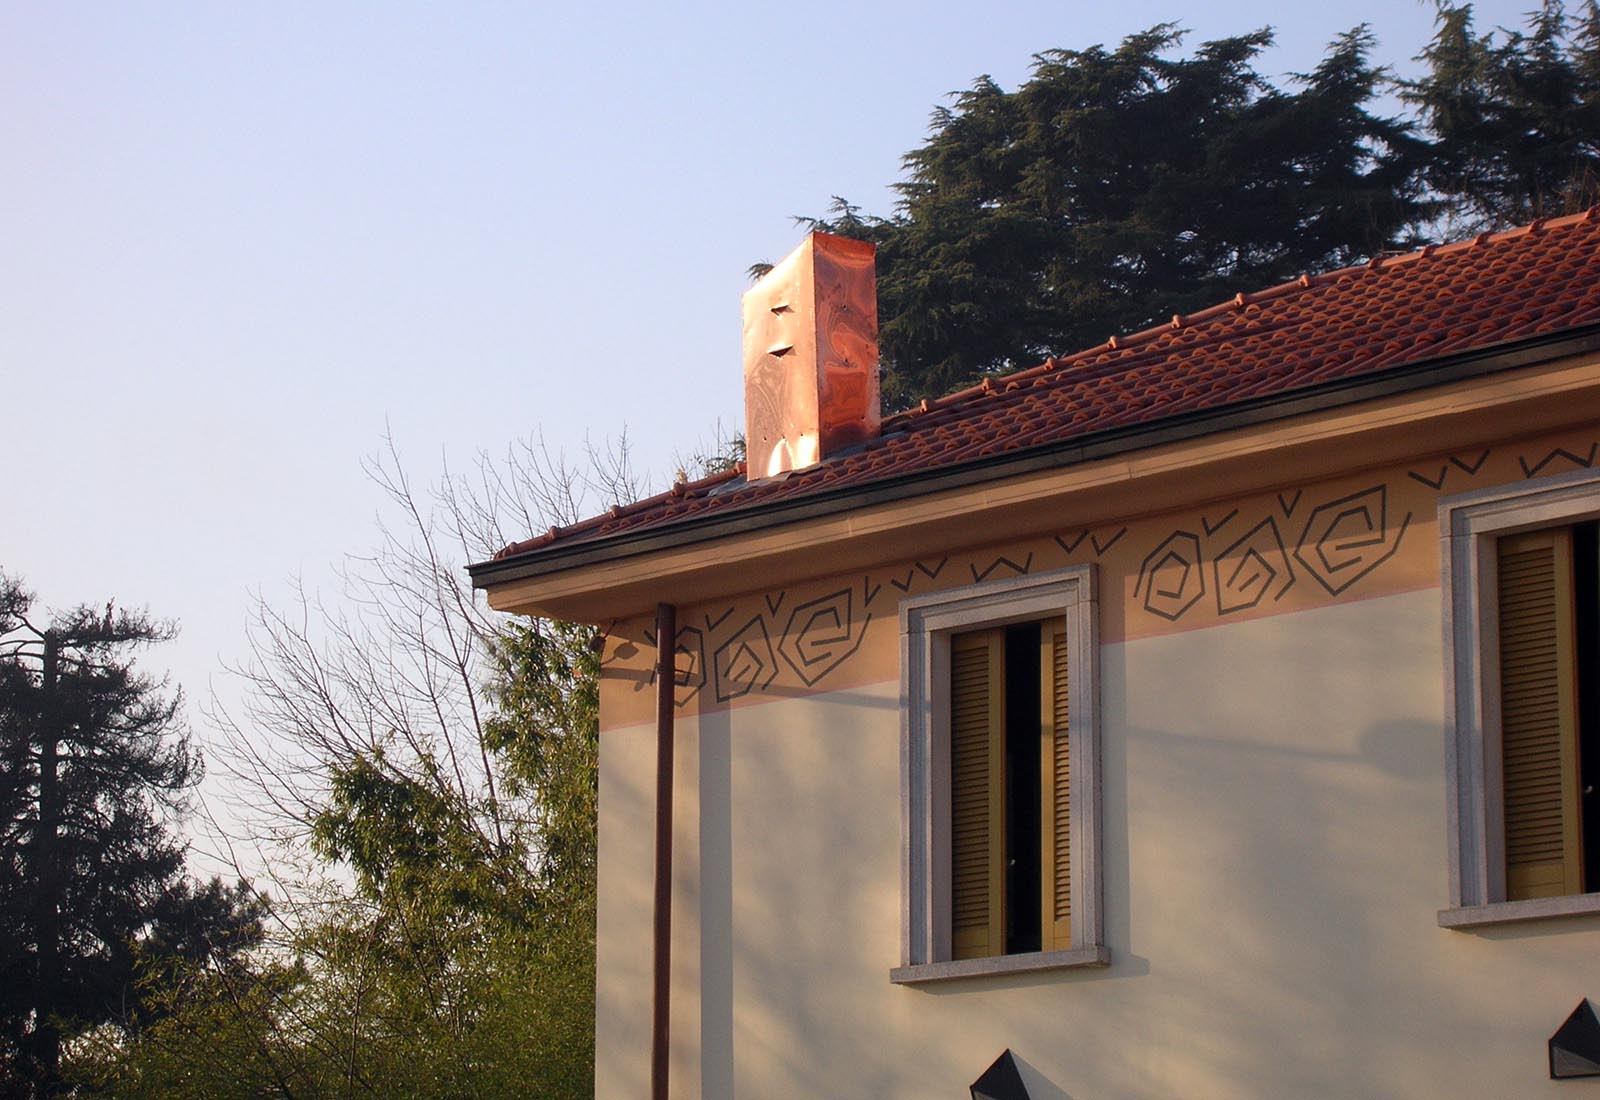 Restaurant Campo delle stelle in Vanzago - Detail of the facade